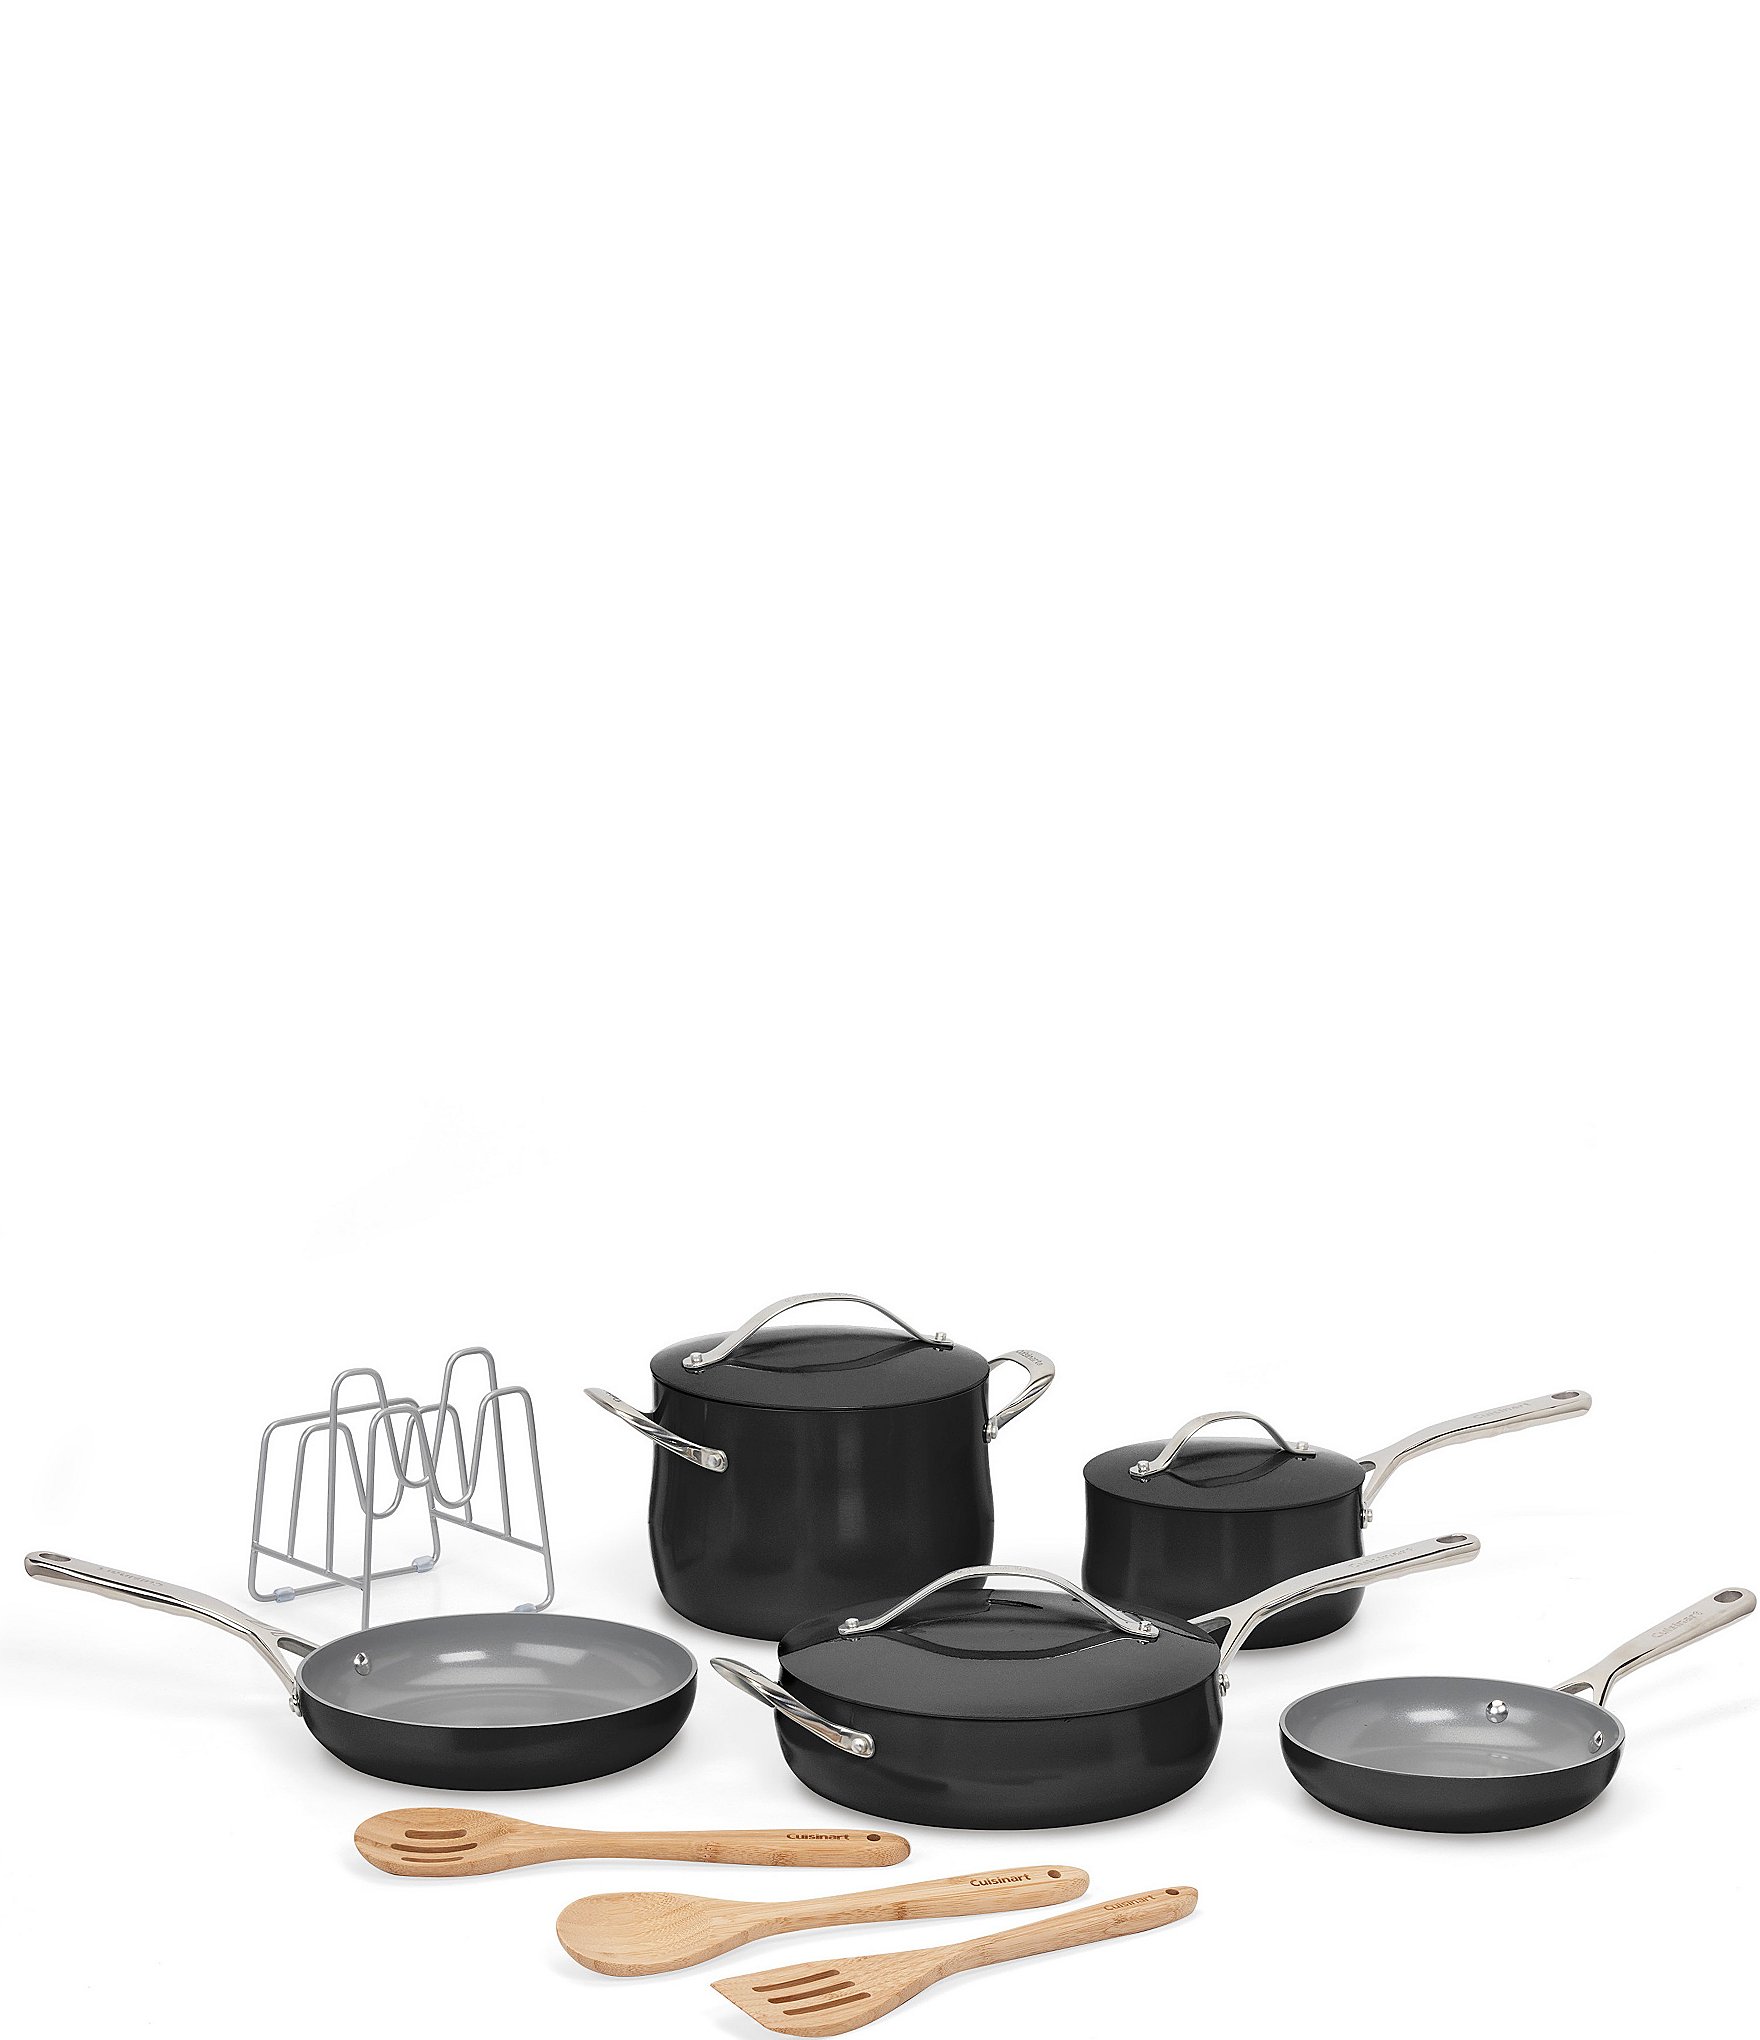 Cuisinart 10 Cast Iron Griddle Pan